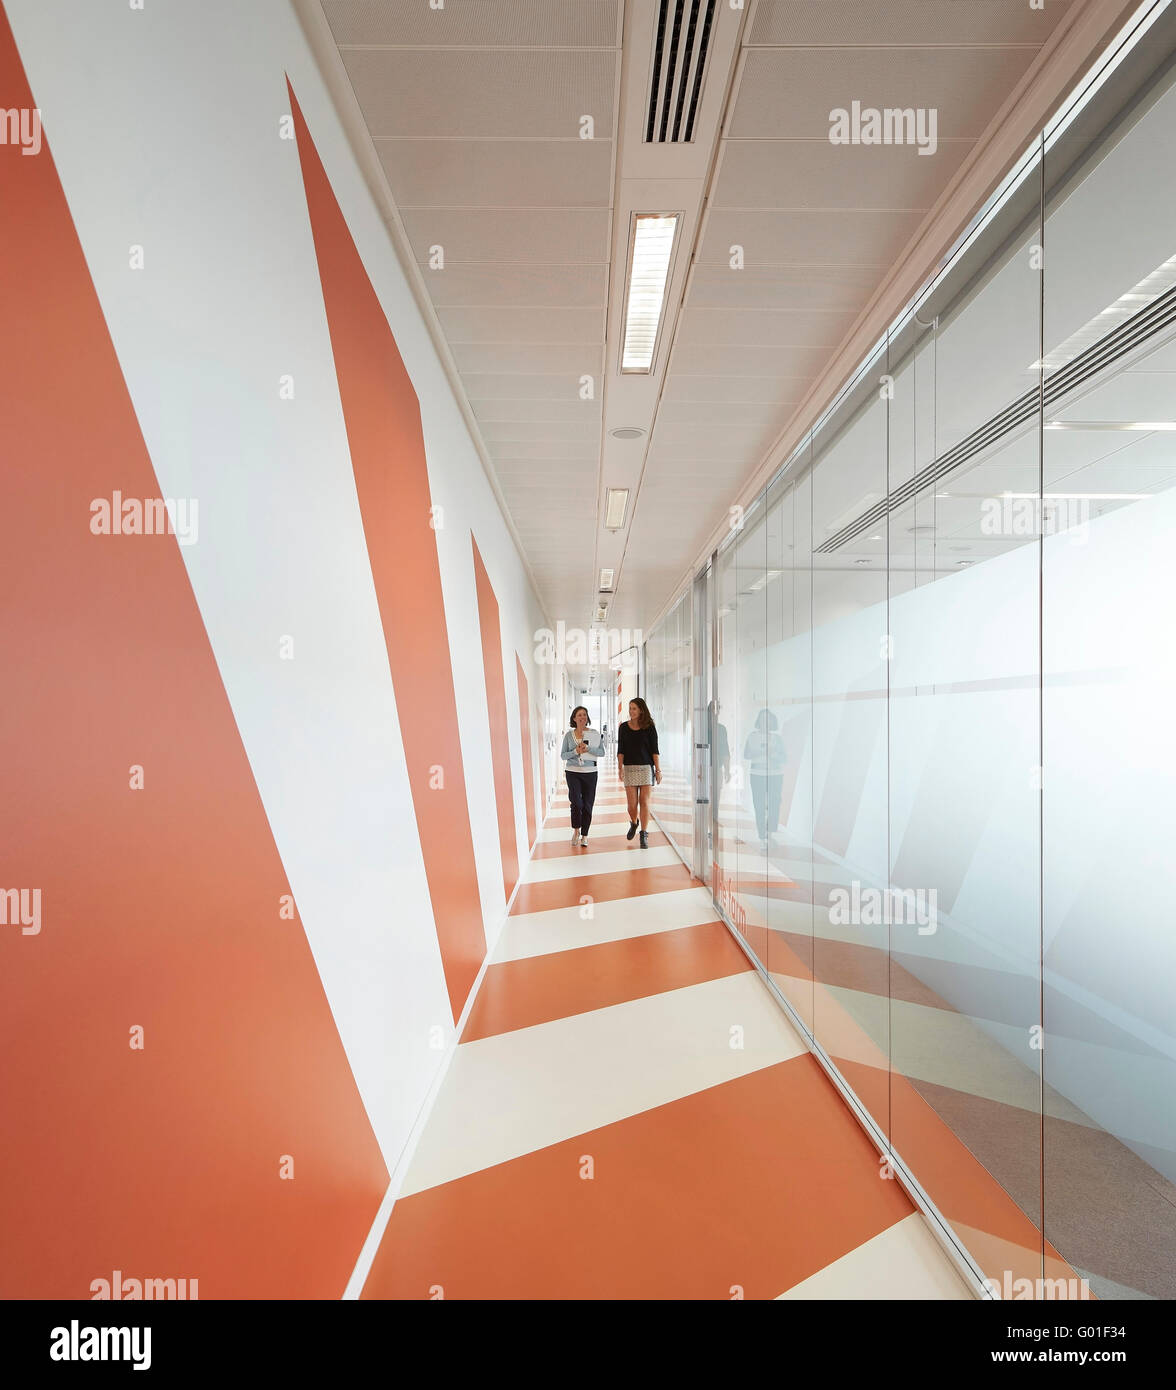 Vue du couloir avec vitrage et graphiques de couleur orange. Central Saint Giles, London, Royaume-Uni. Architecte : Renzo Piano Building Workshop, 2015. Banque D'Images